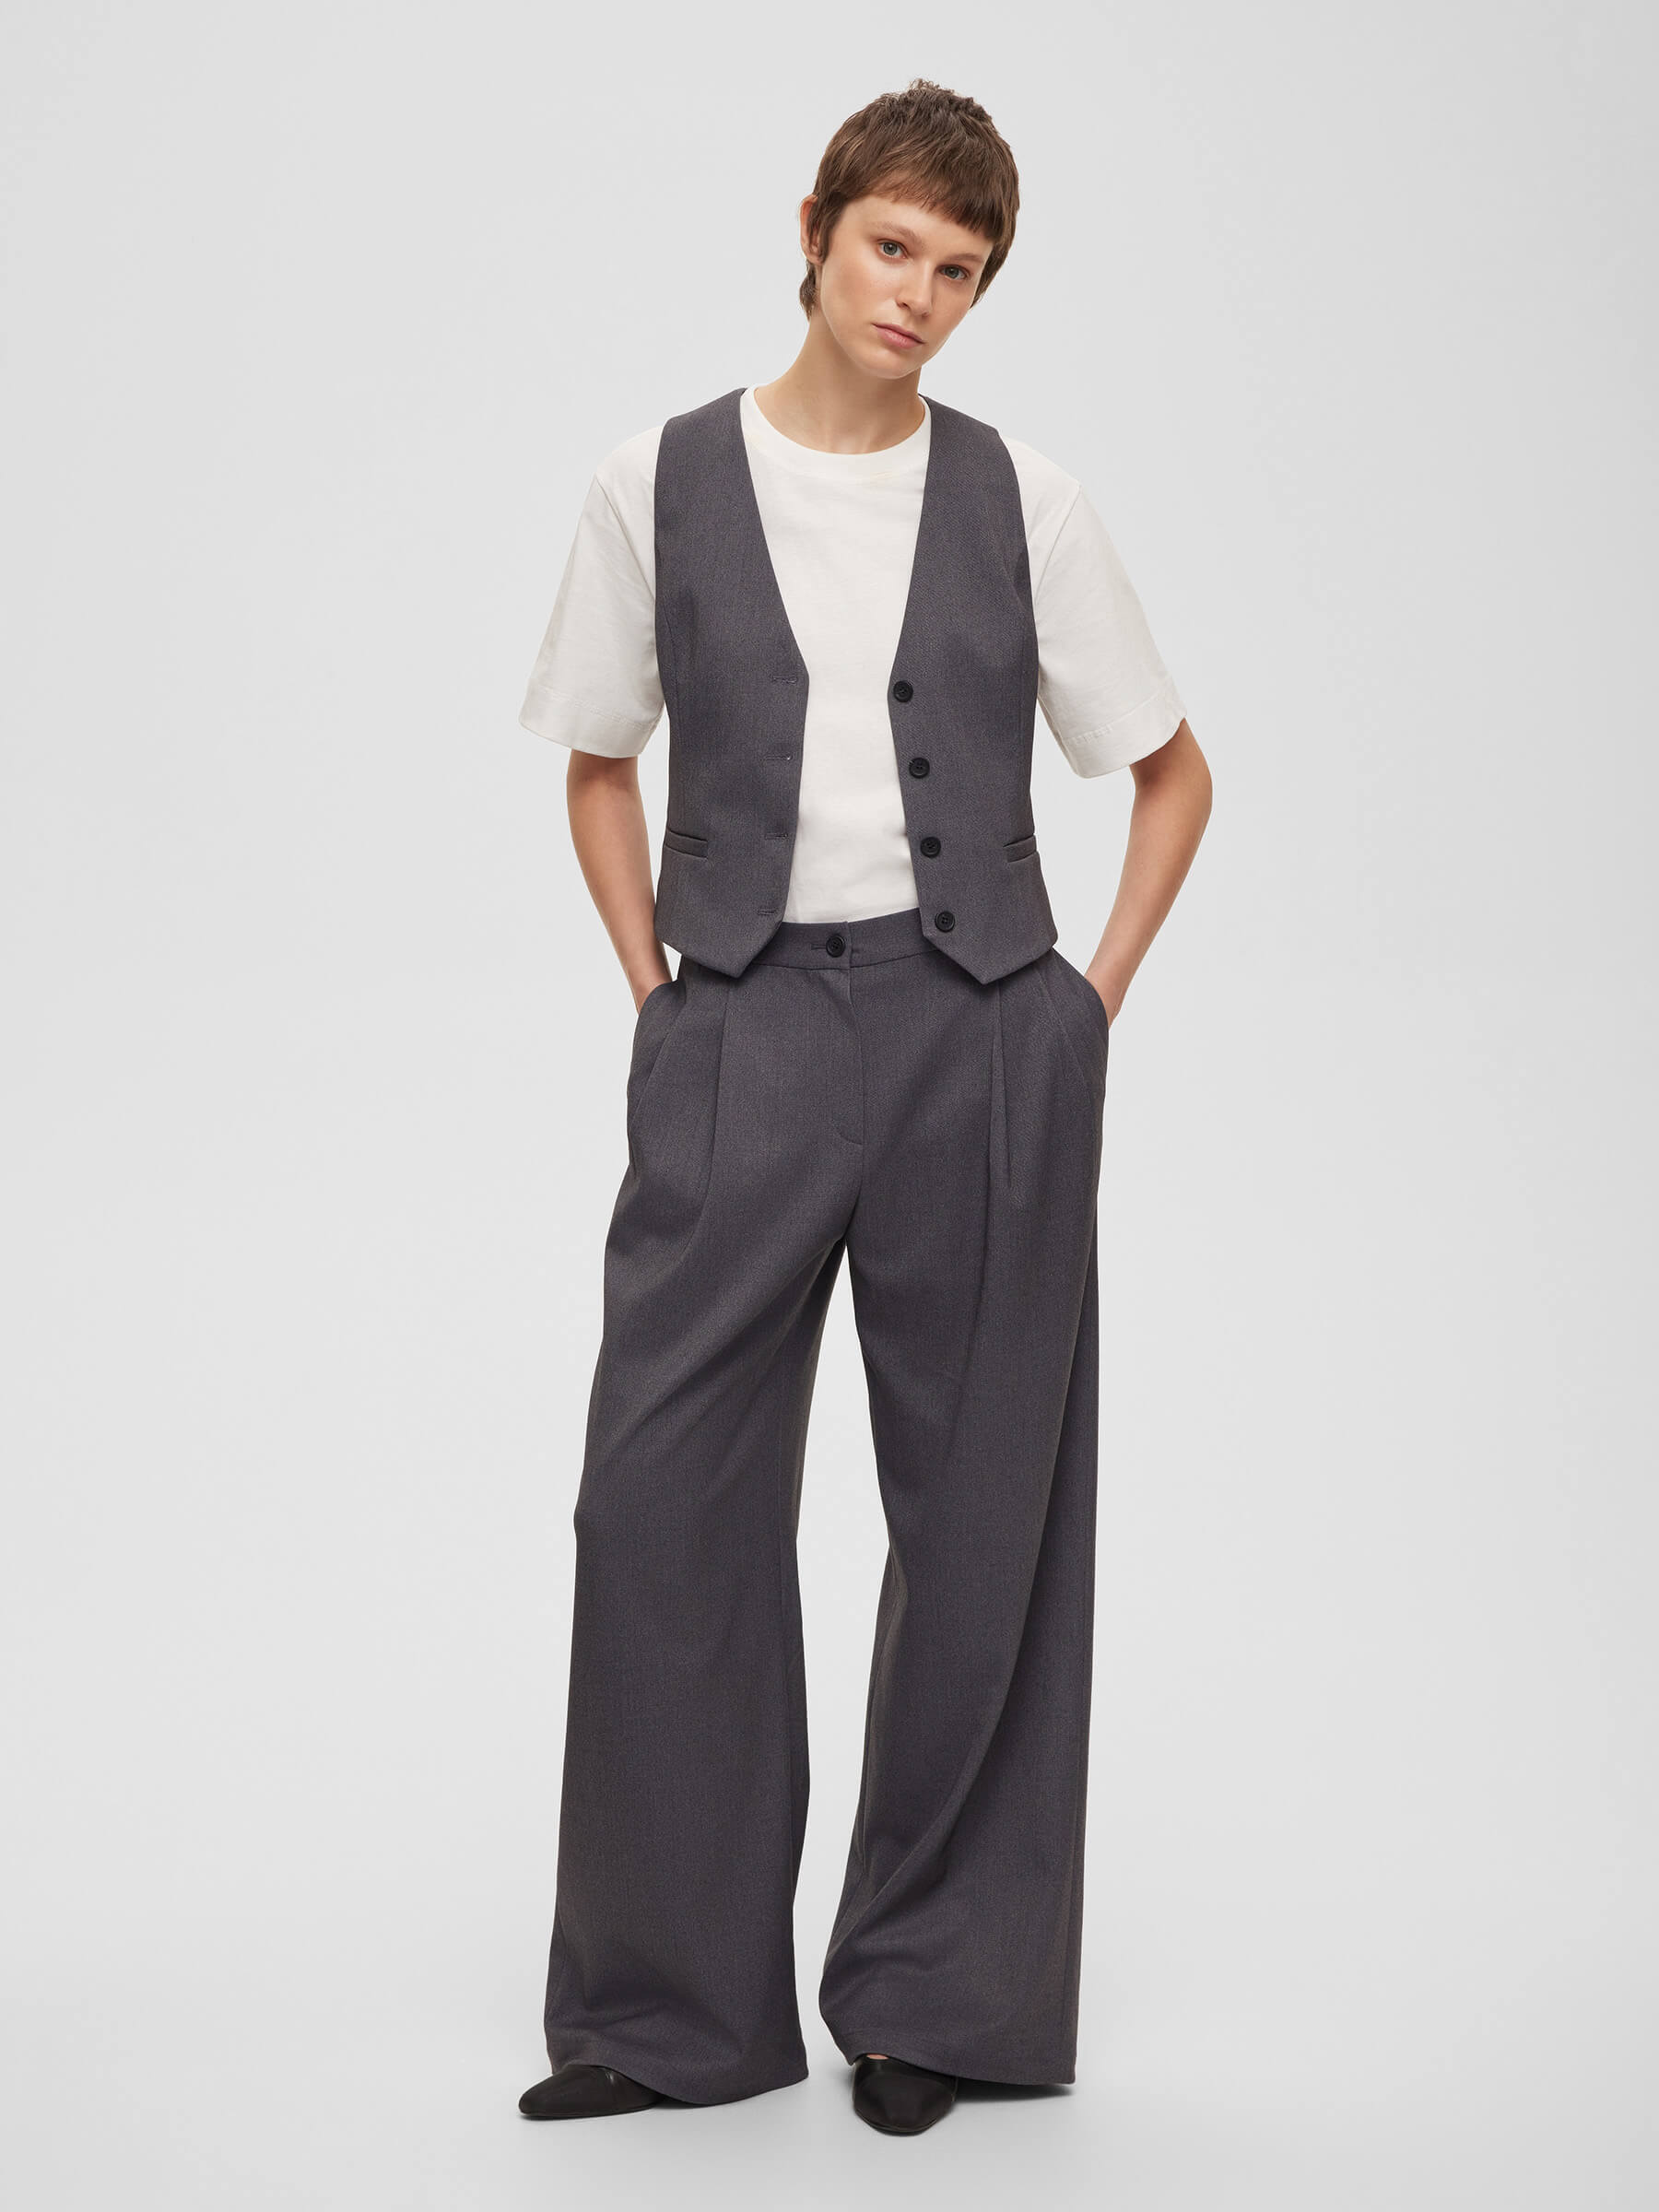 Брюки женские широкие с защипами, цвет – серый юбка брюки широкие свободного кроя